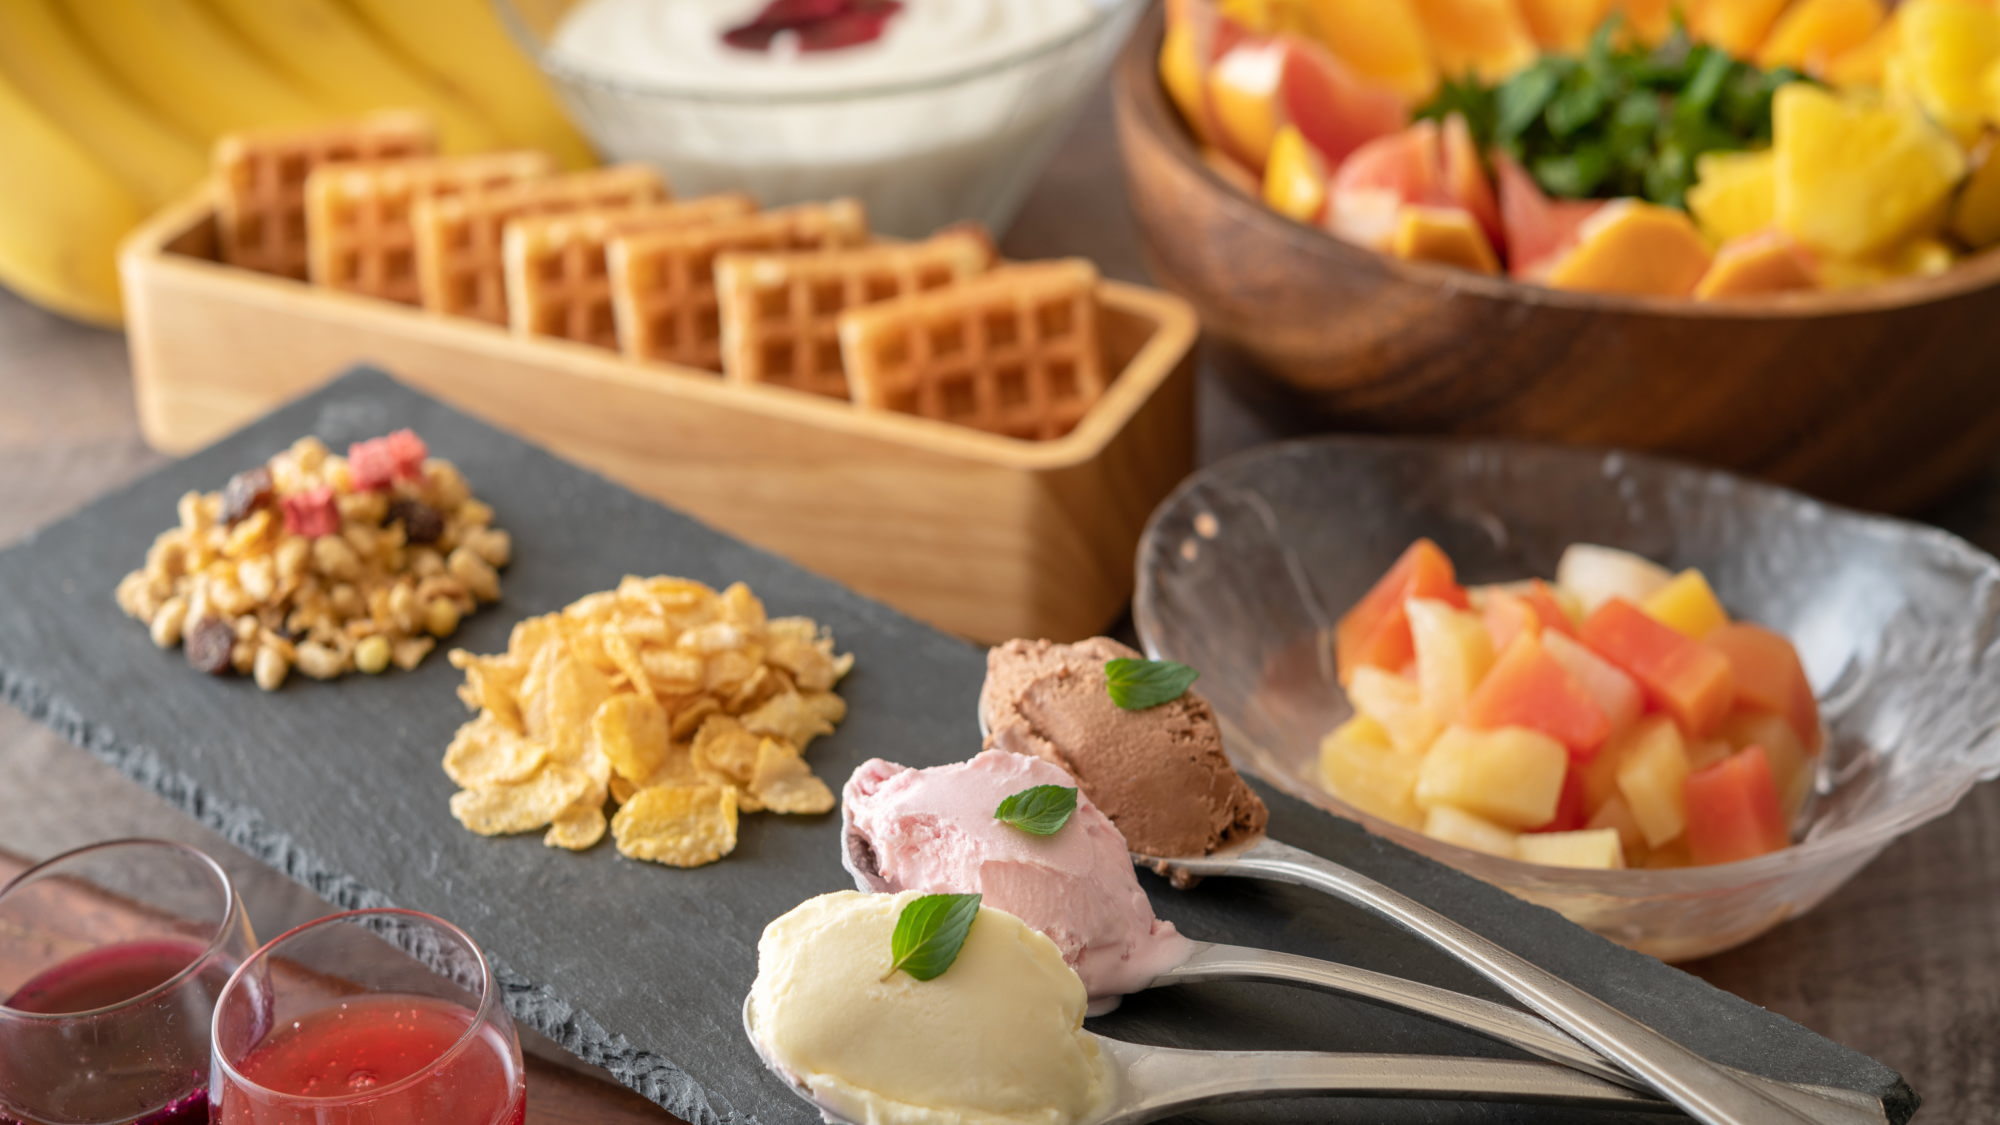 【朝食ビュッフェ】グラノーラやヨーグルト、フルーツもどうぞ♪ ※イメージ